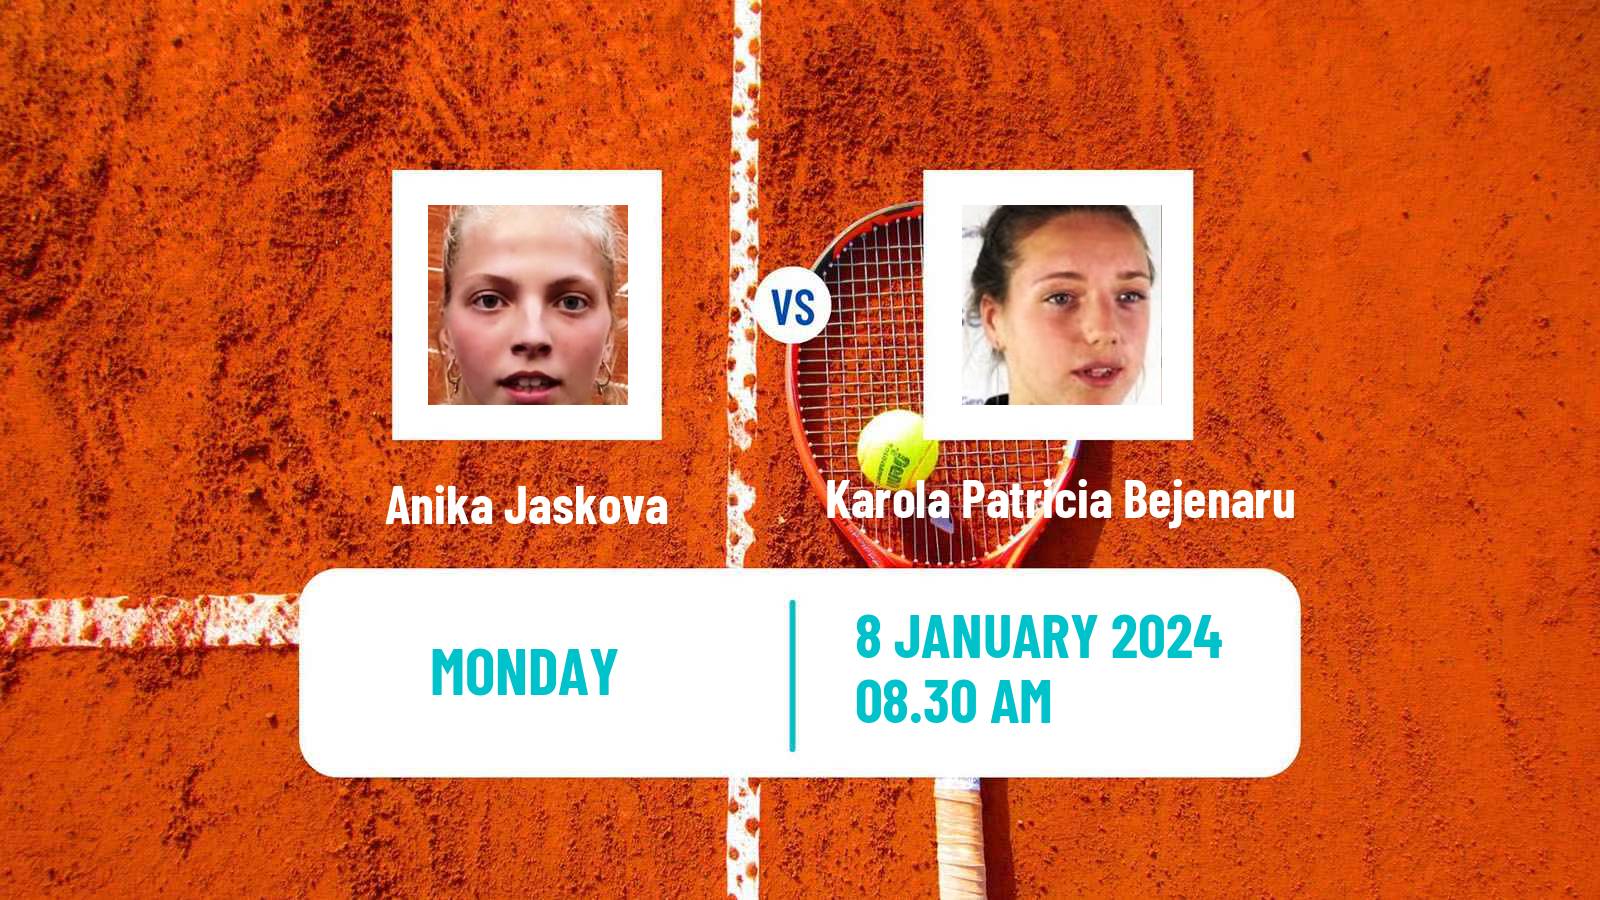 Tennis ITF W35 Antalya Women Anika Jaskova - Karola Patricia Bejenaru